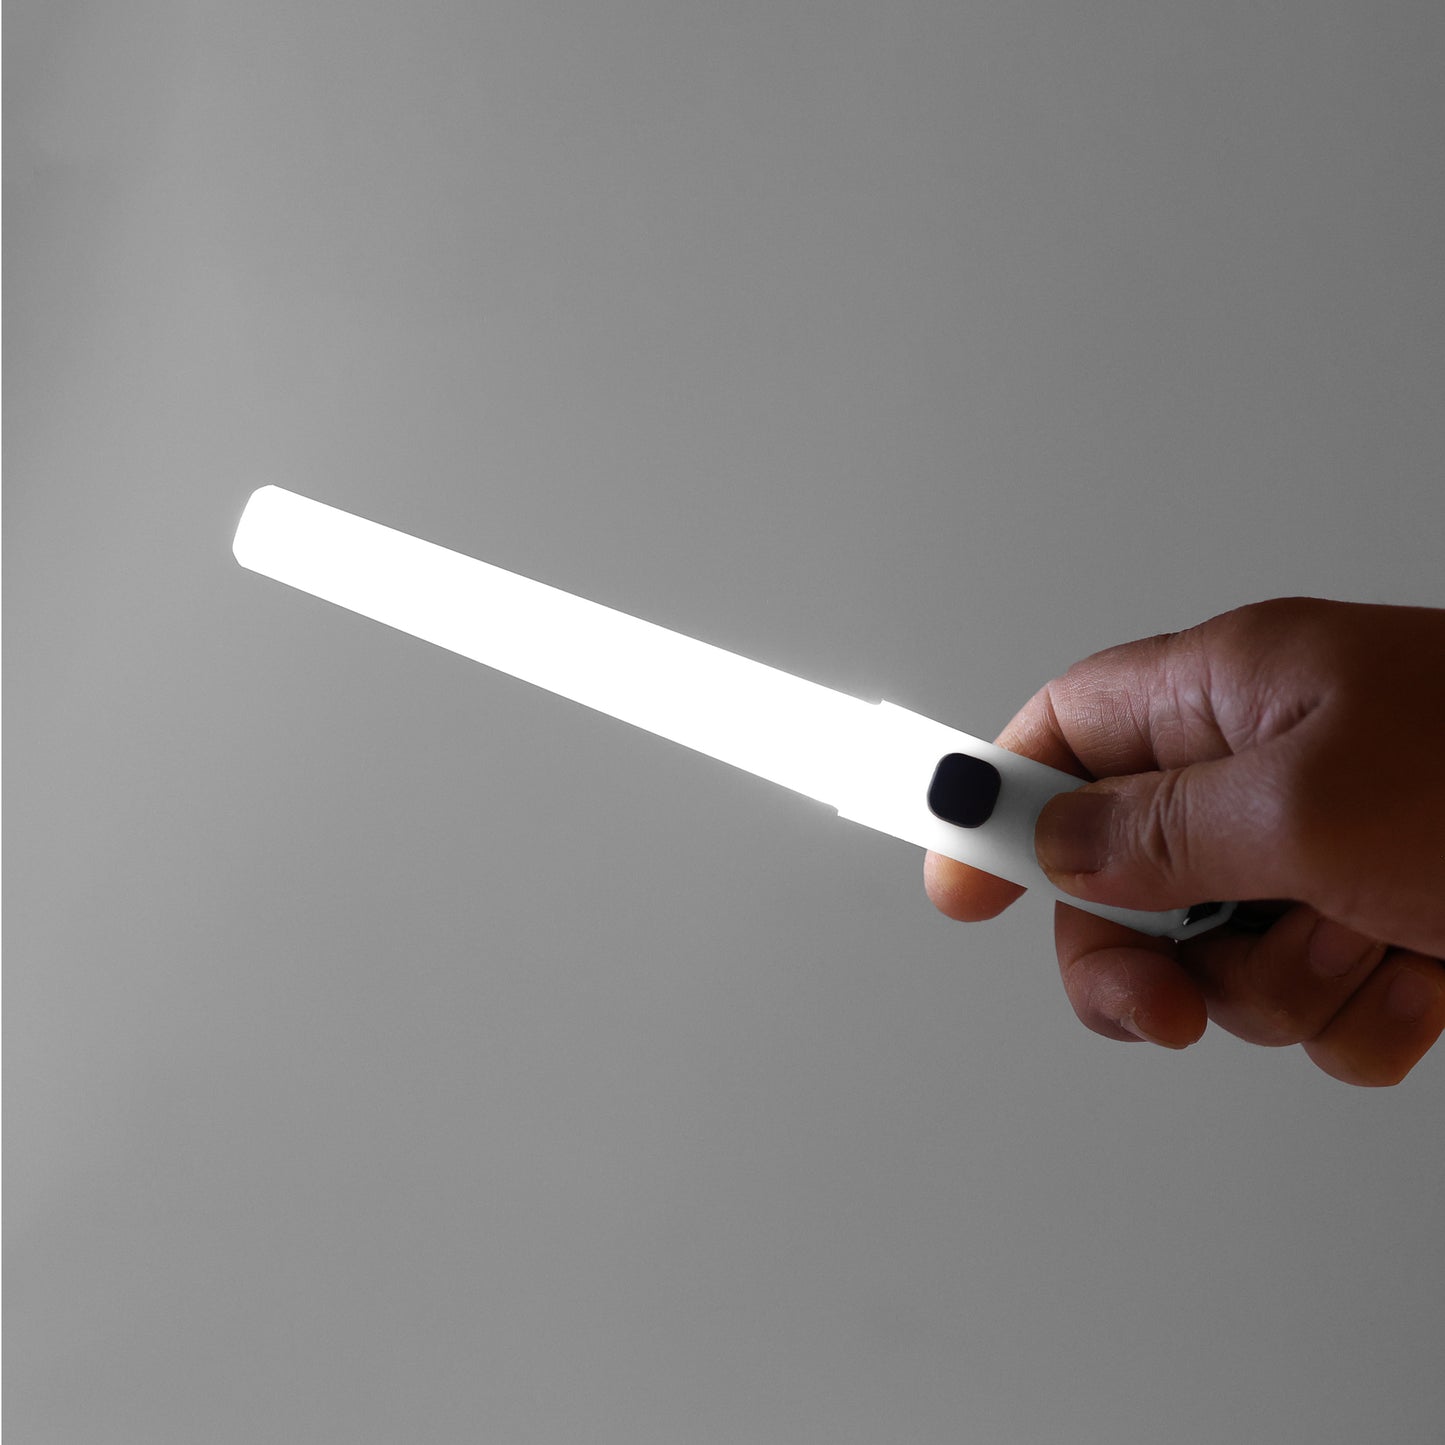 LED Lightstick - White